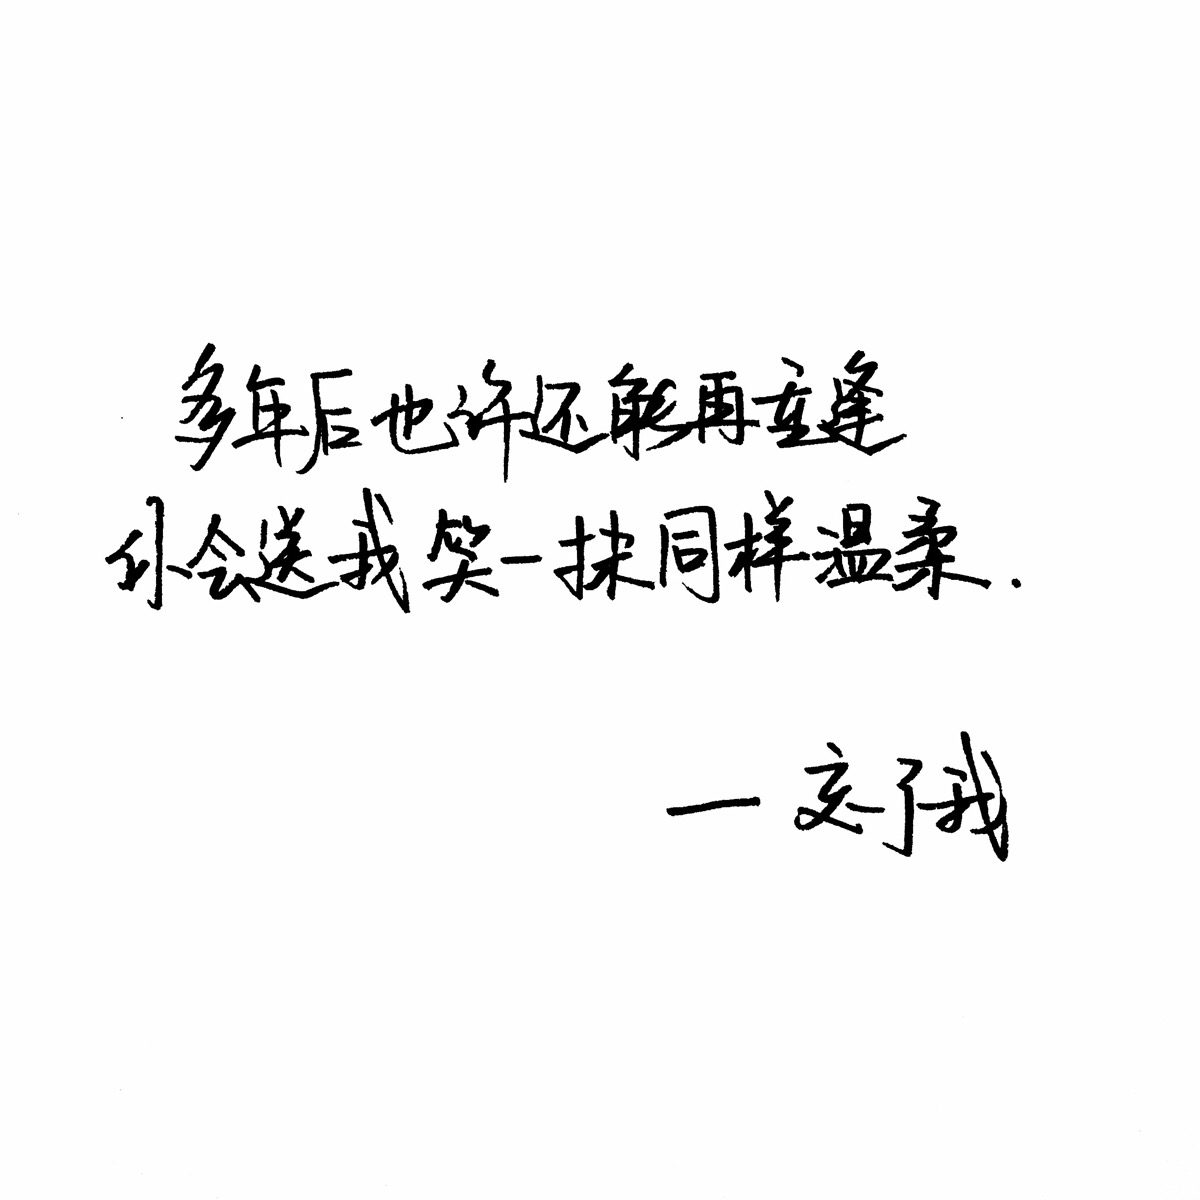 忘了我 杨宗纬 手写句子 歌词 台词 原创壁纸 励志壁纸 哲理 手写情书